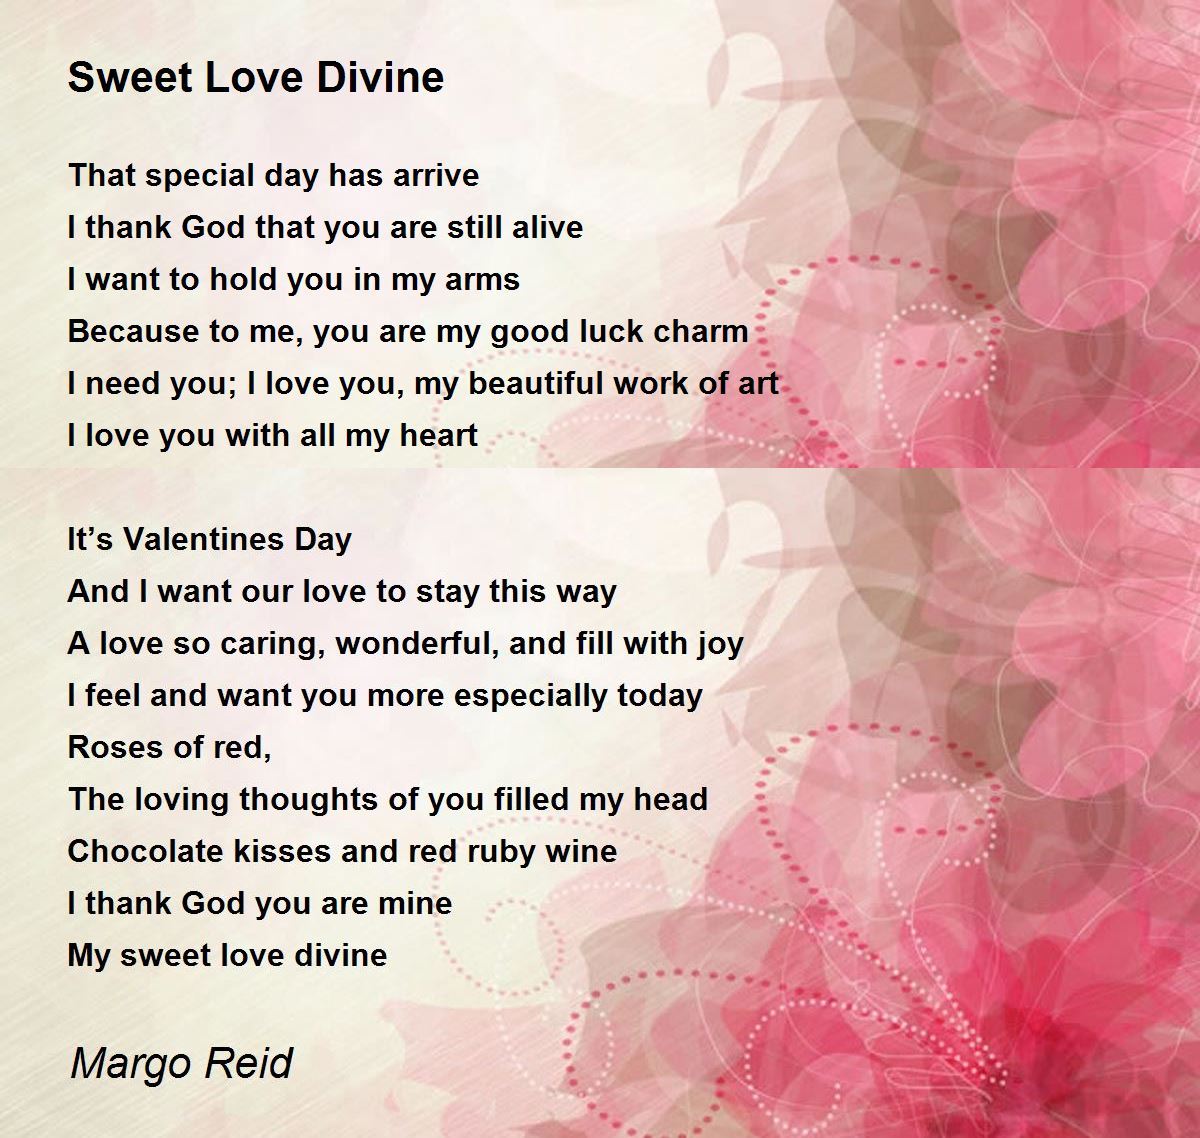 Sweet Love Divine - Sweet Love Divine Poem by Margo Reid